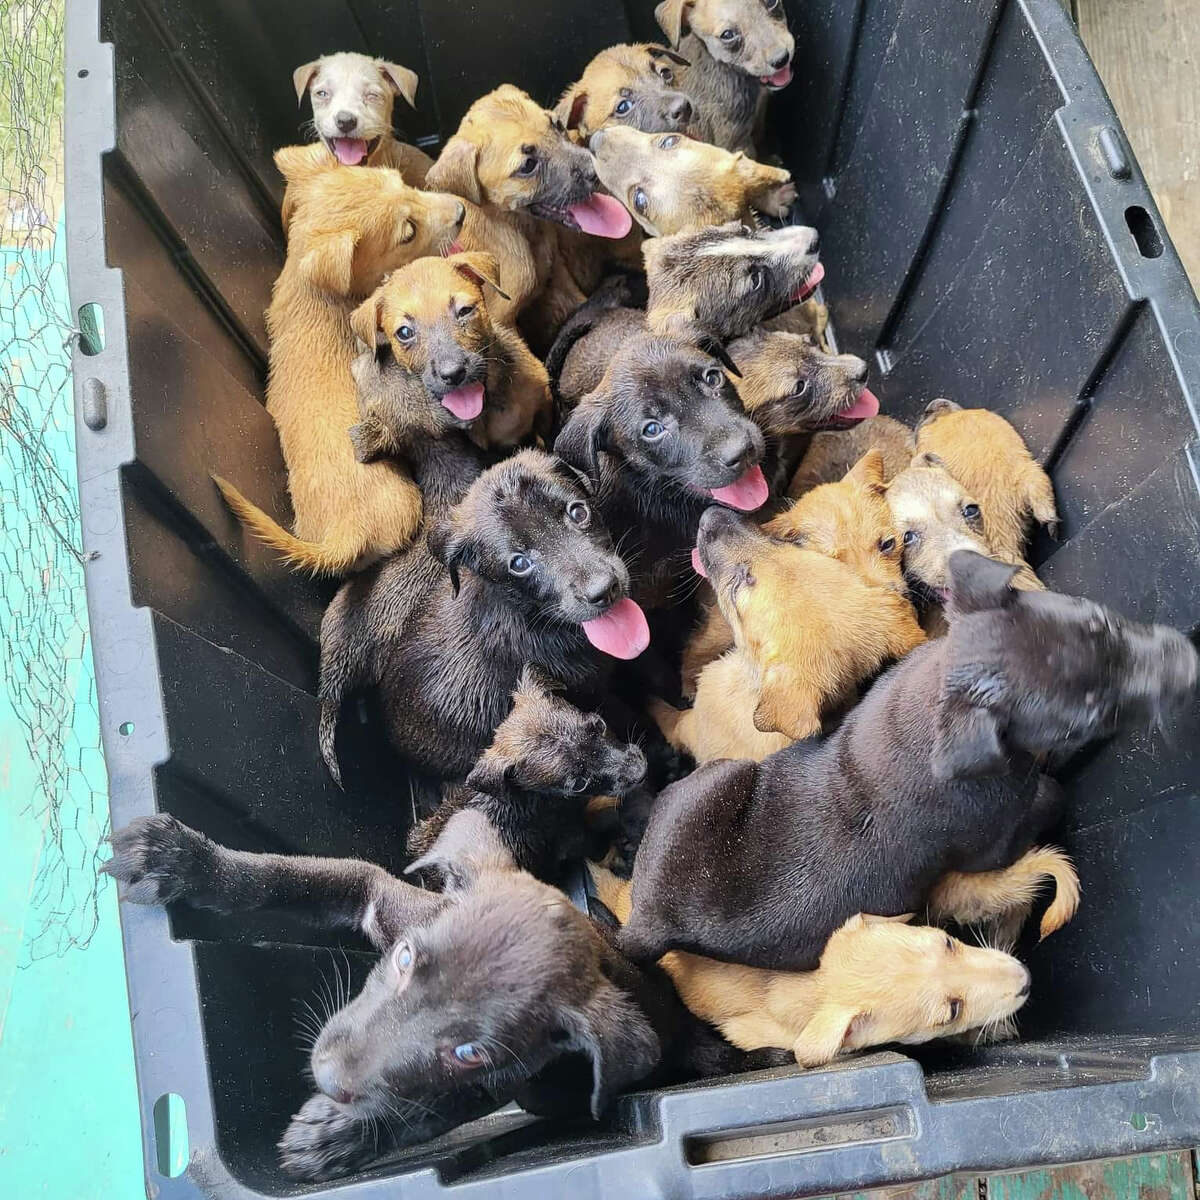 Twenty puppies were found abandoned in this black bin.